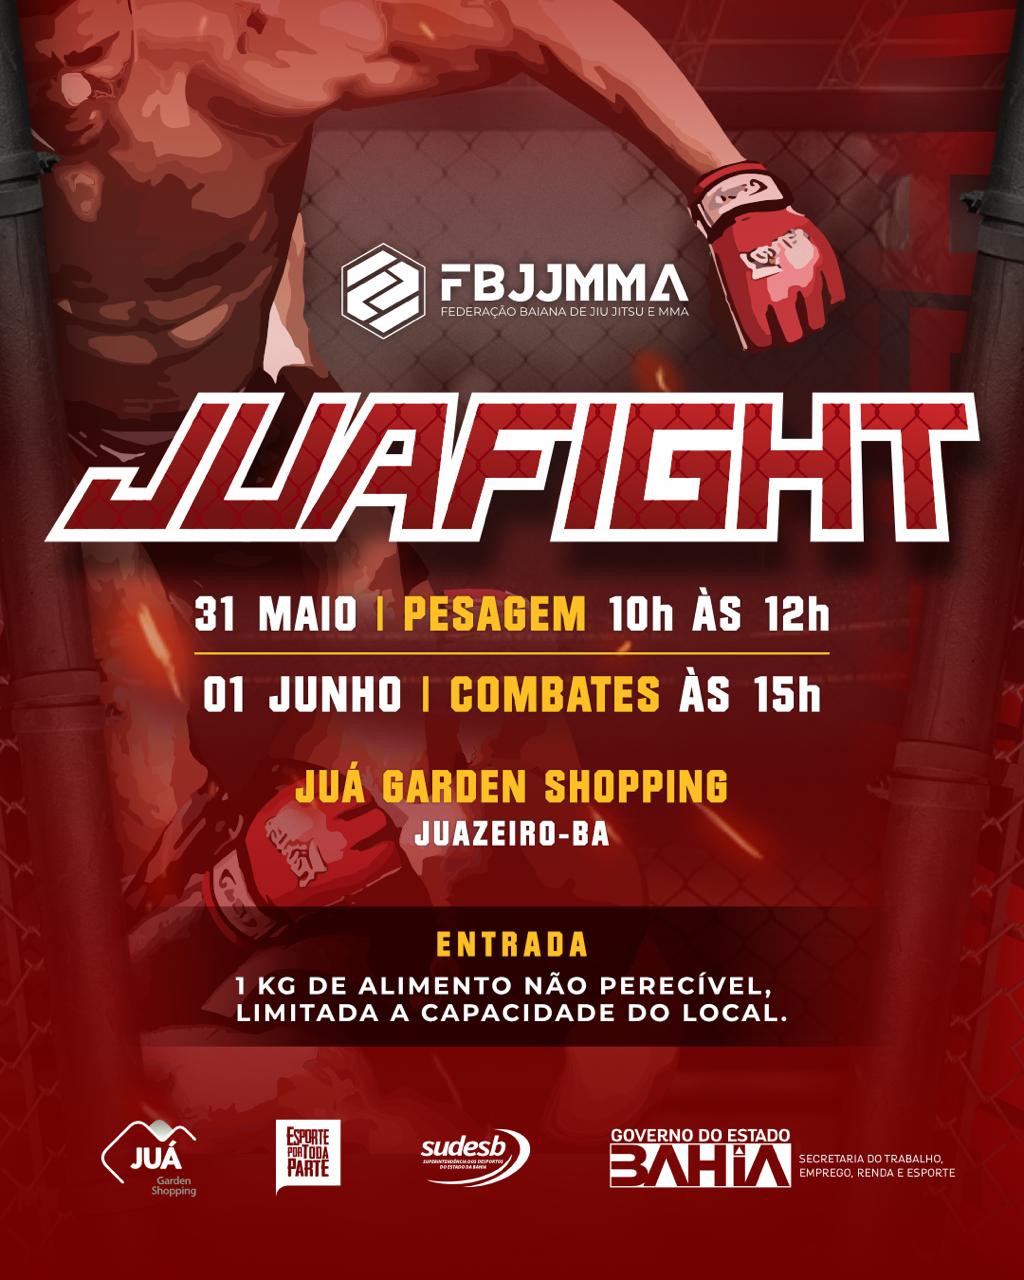 Deputado Zó recepciona representantes do JuaFigth, evento de MMA que acontece em Juazeiro neste sábado, 31